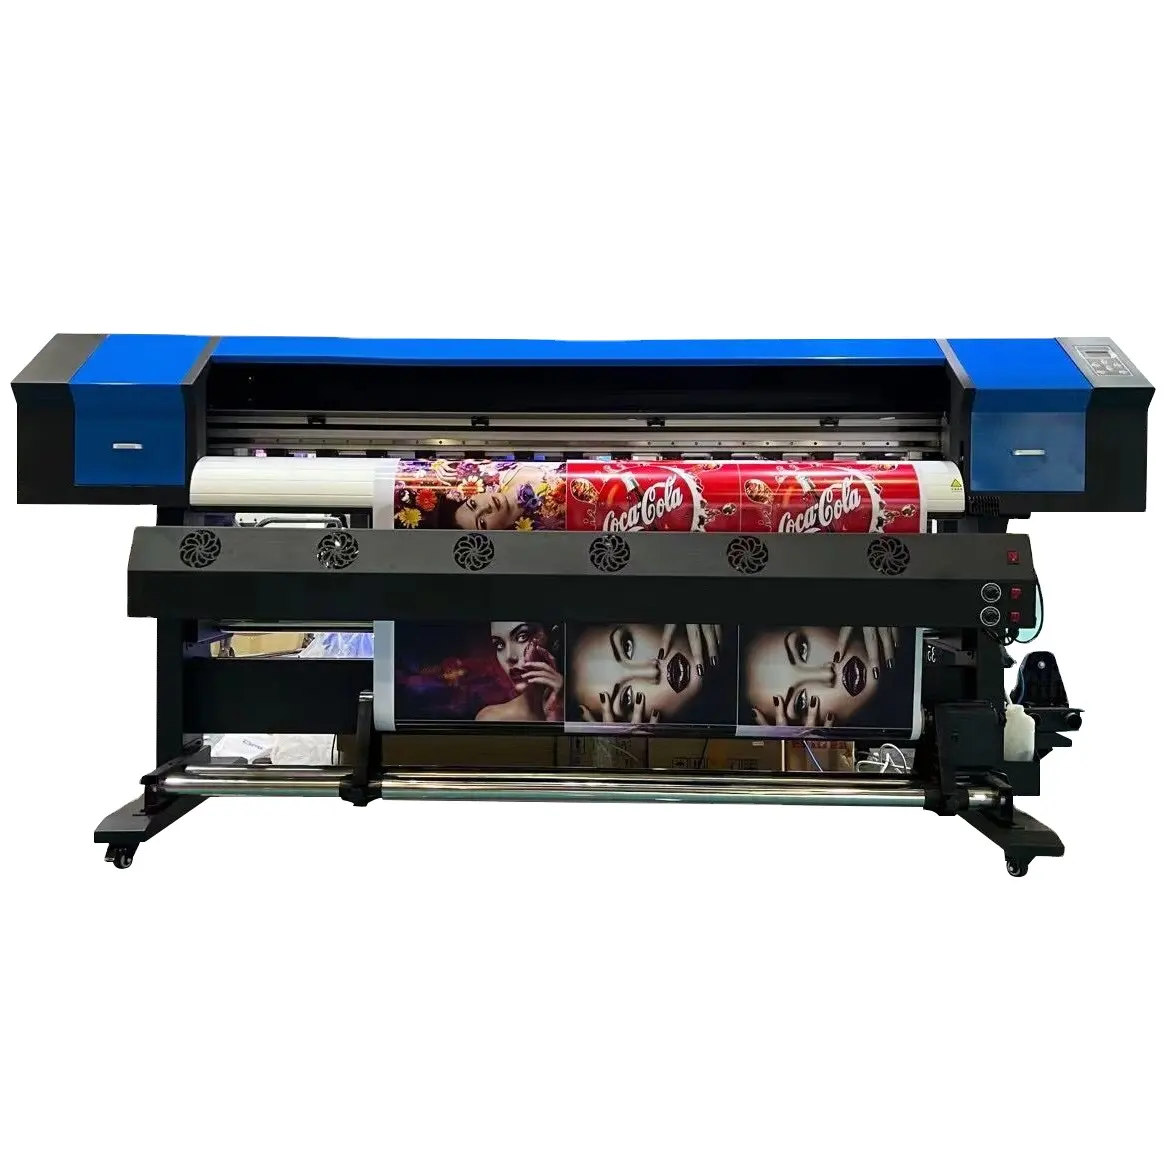 Ejet máquina de impressão plotter, etiqueta para impressora, cantão 1.8m, vinil, reflexivo xp600/i3200, eco solvente